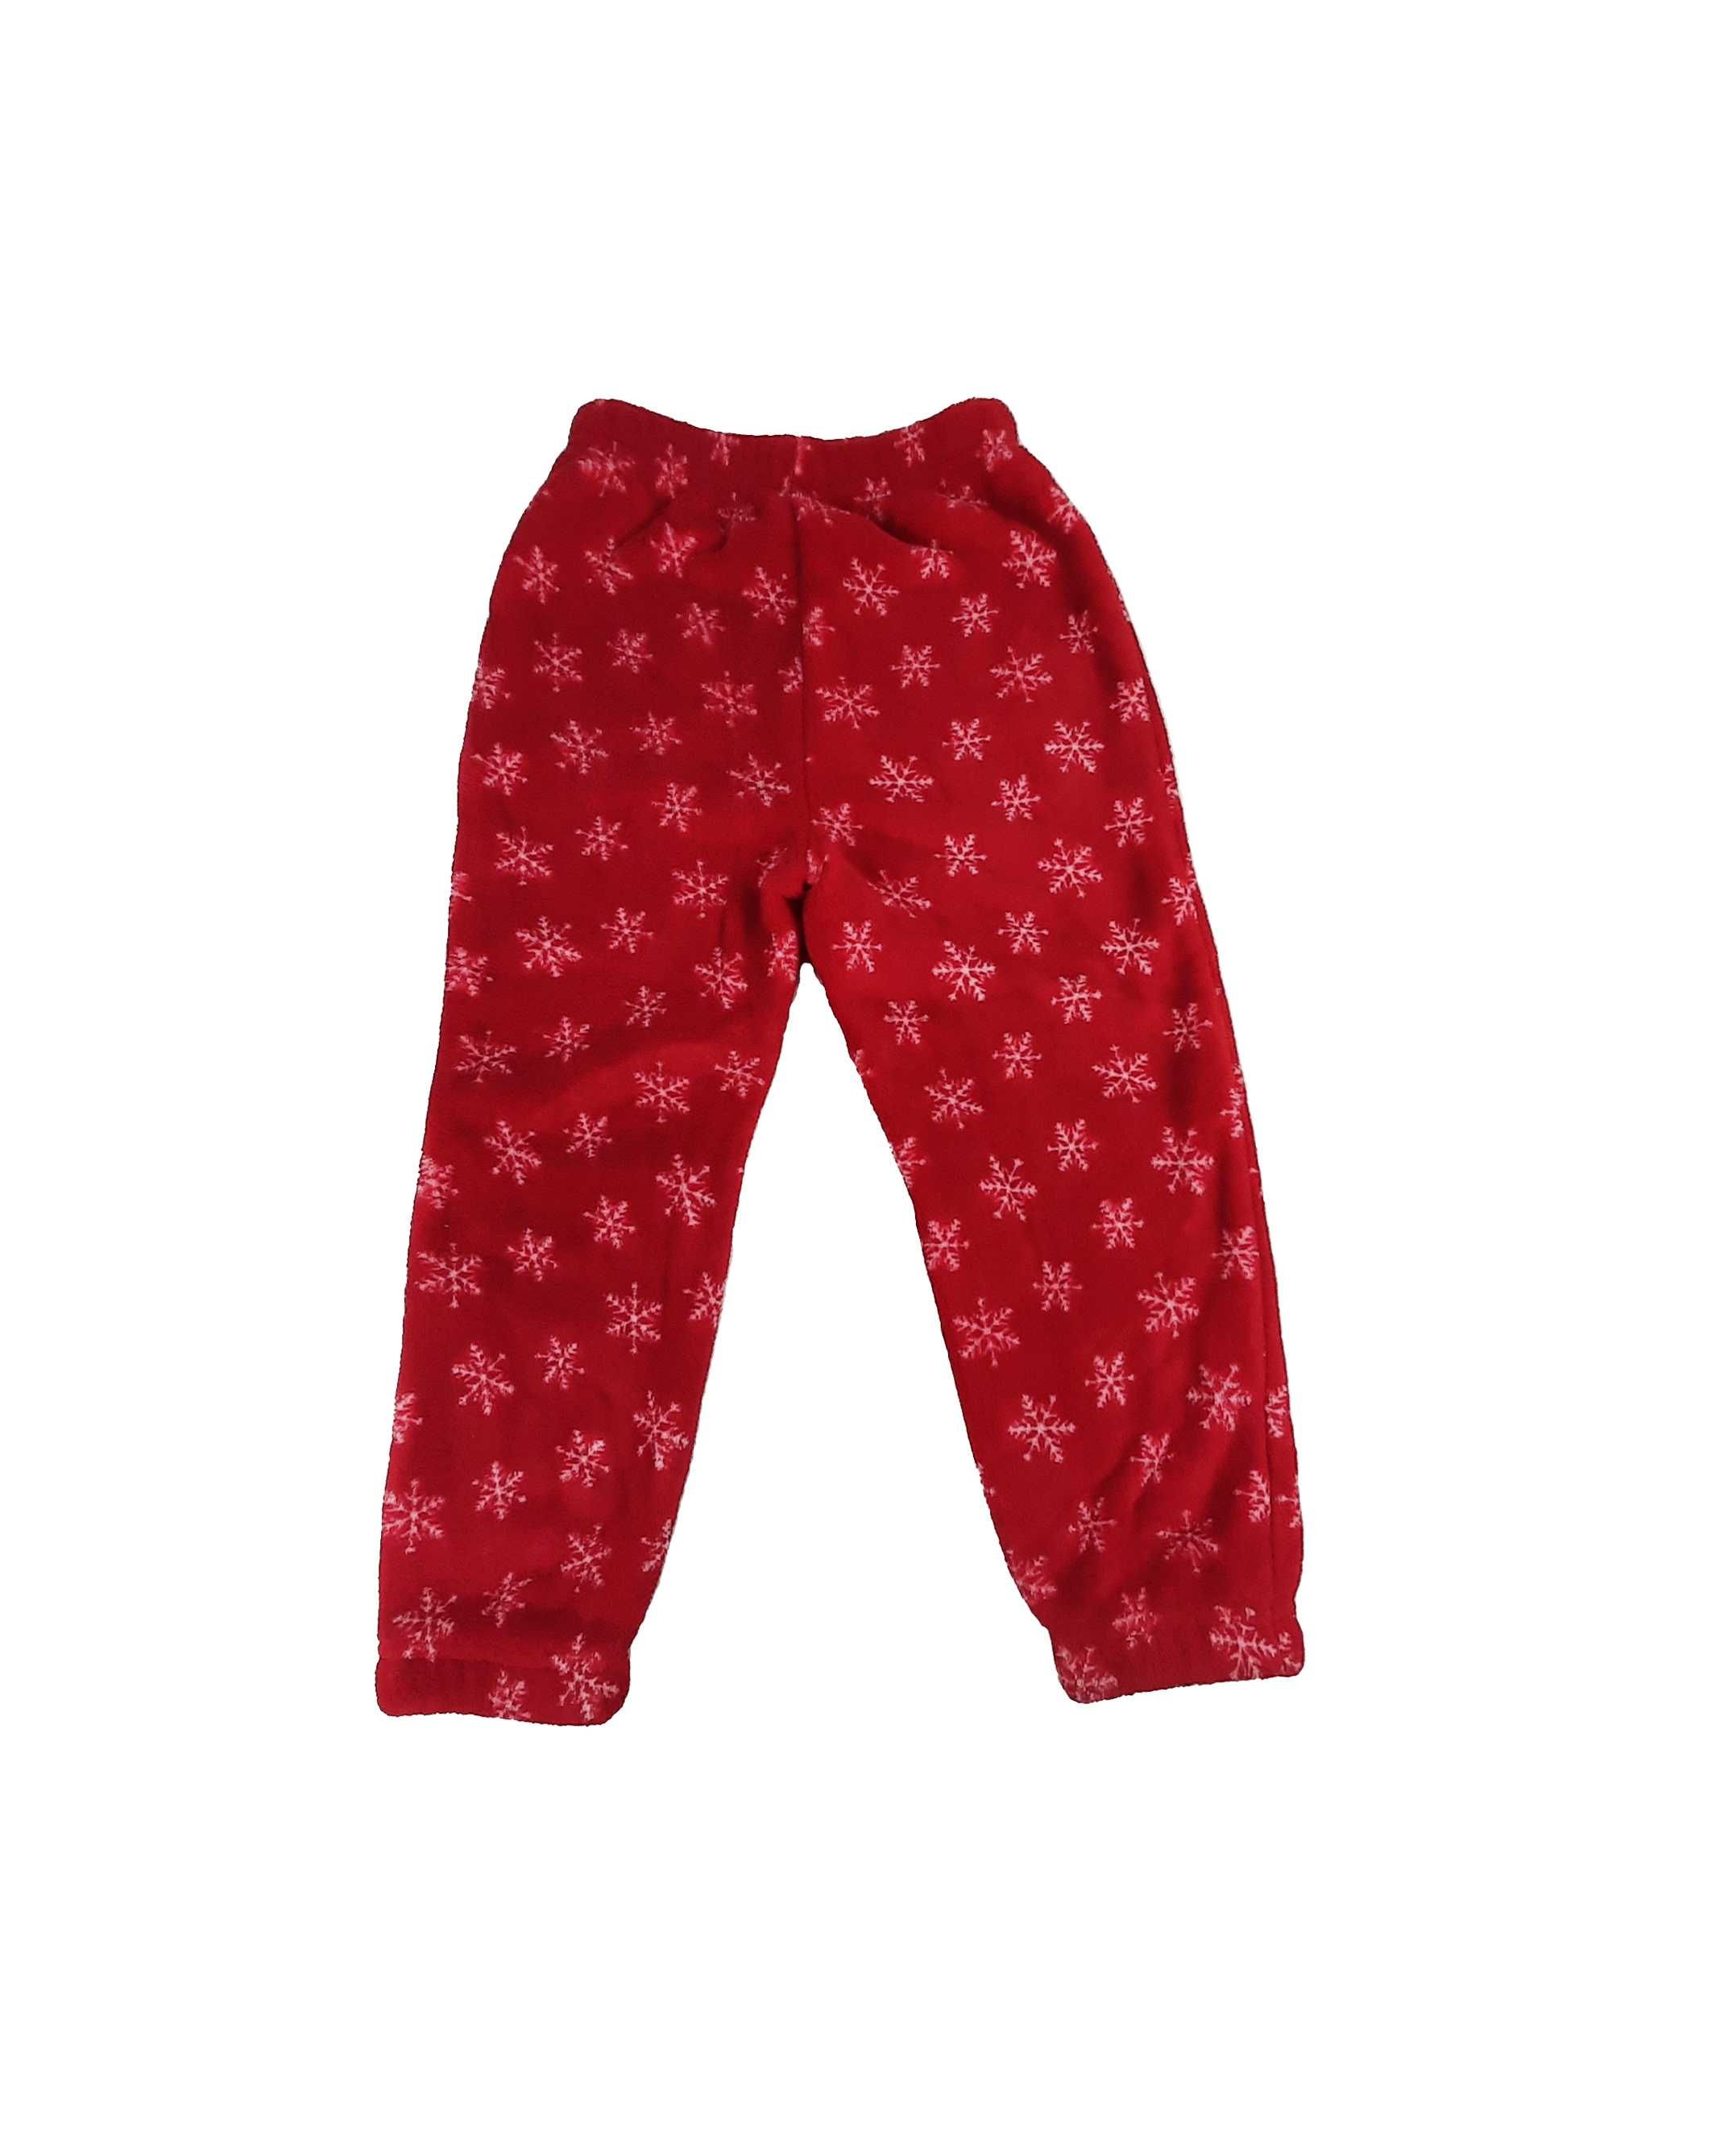 Śliczna czerwona piżamka z plecakiem dla dziecka 4-5 lat